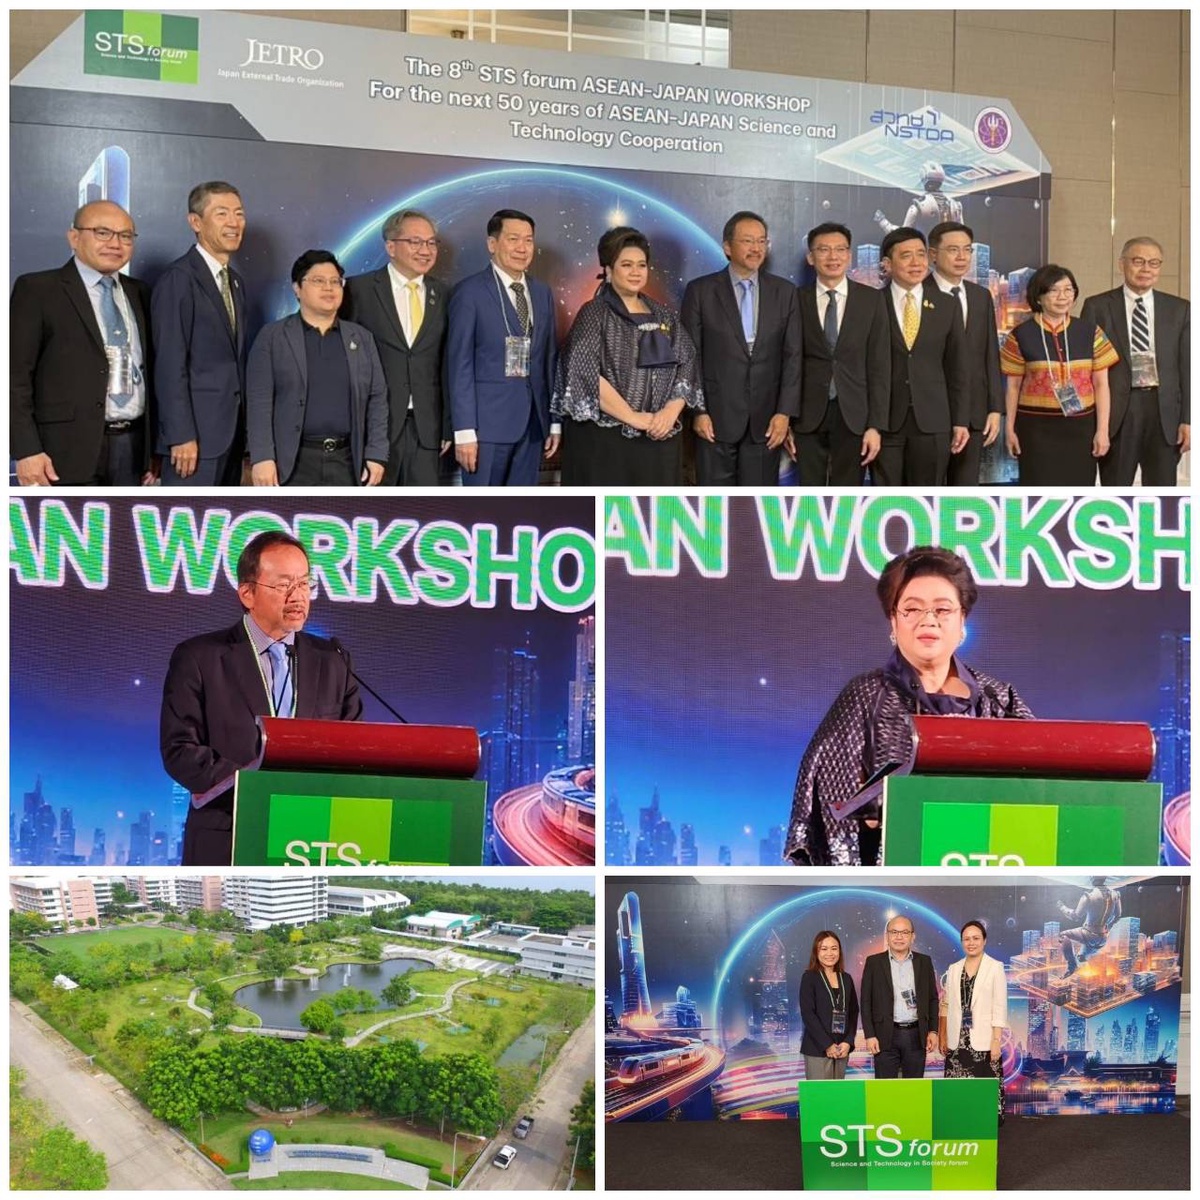 วว. มุ่งสร้างเครือข่ายความร่วมมือระหว่างประเทศ พร้อมผลักดันการพัฒนาวิทยาศาสตร์เทคโนโลยีที่ยั่งยืน ในการประชุมเชิงปฏิบัติการ The 8th STS forum ASEAN-Japan